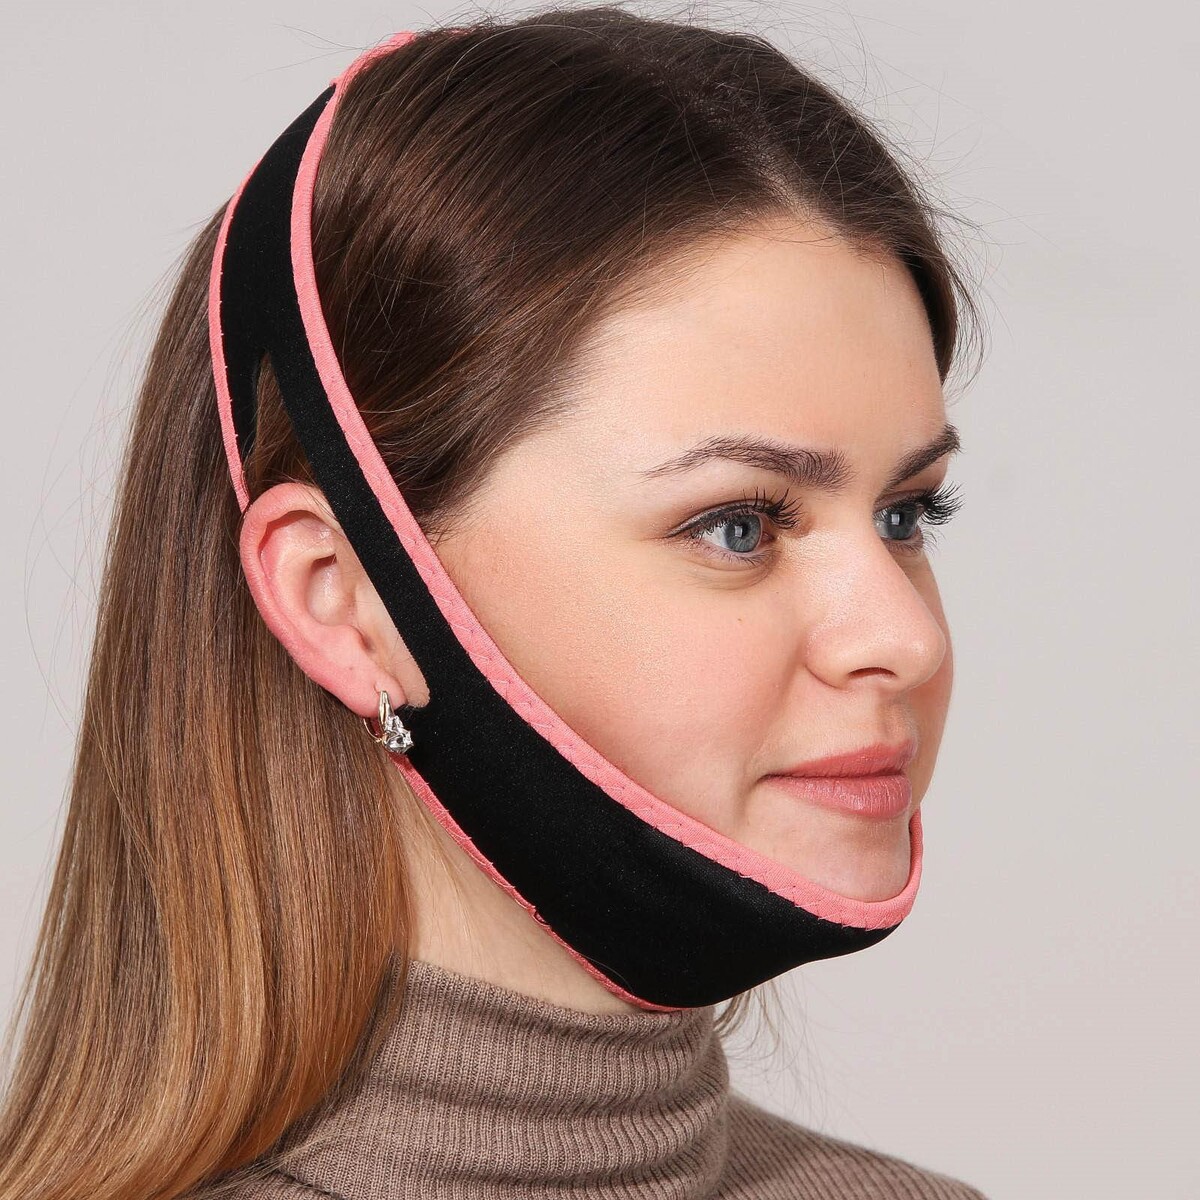 Маска текстильная для коррекции овала лица, на липучке, цвет черный/розовый маска для лица